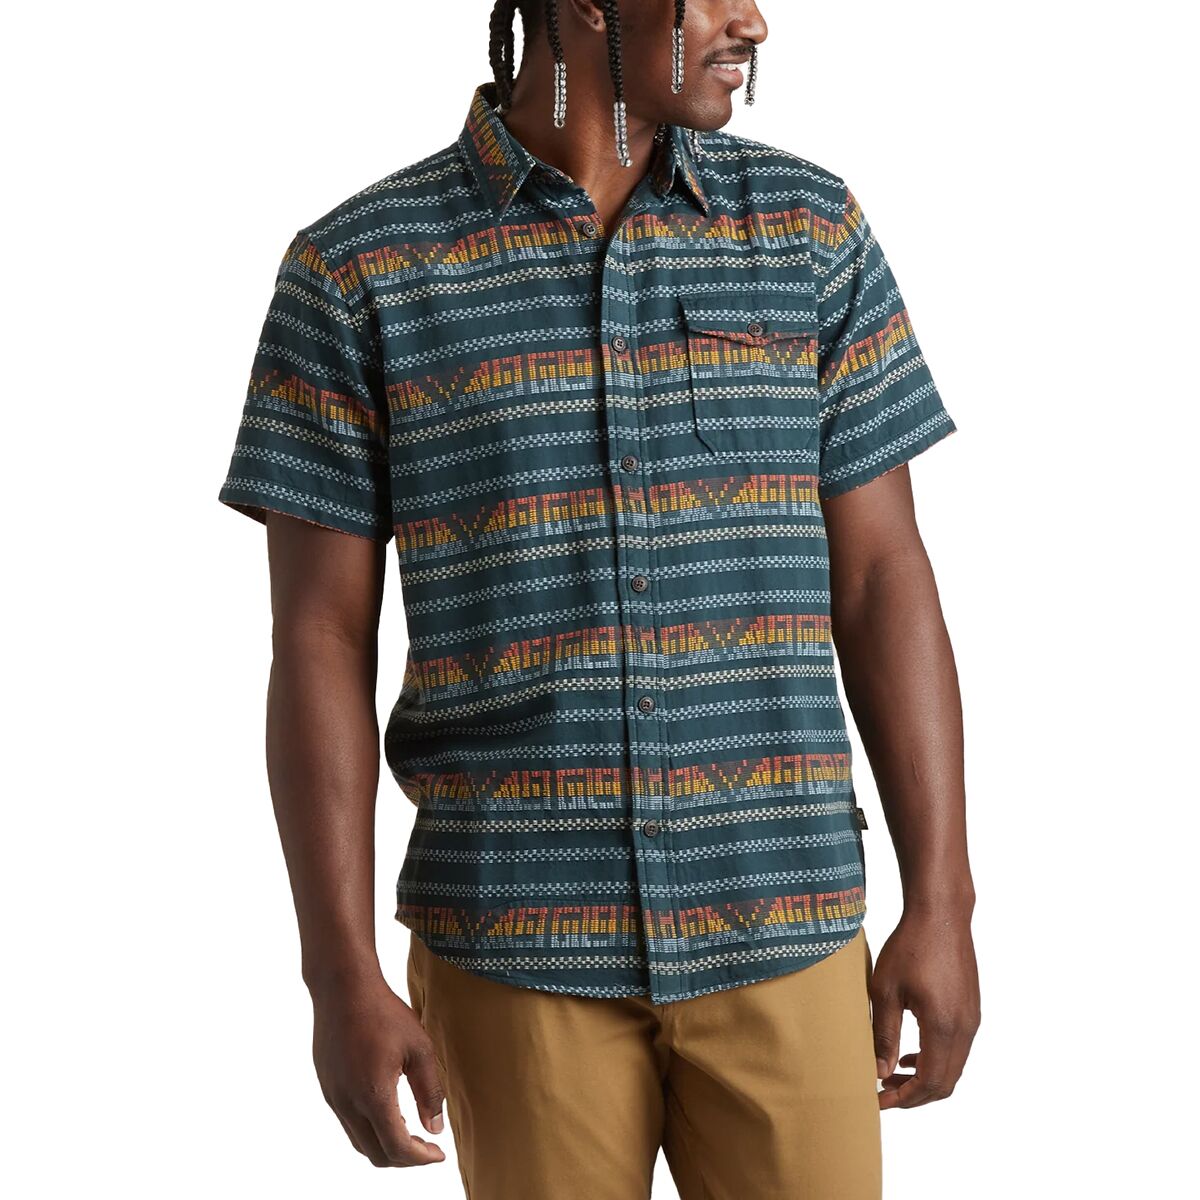 San Gabriel Short-Sleeve Shirt - Men